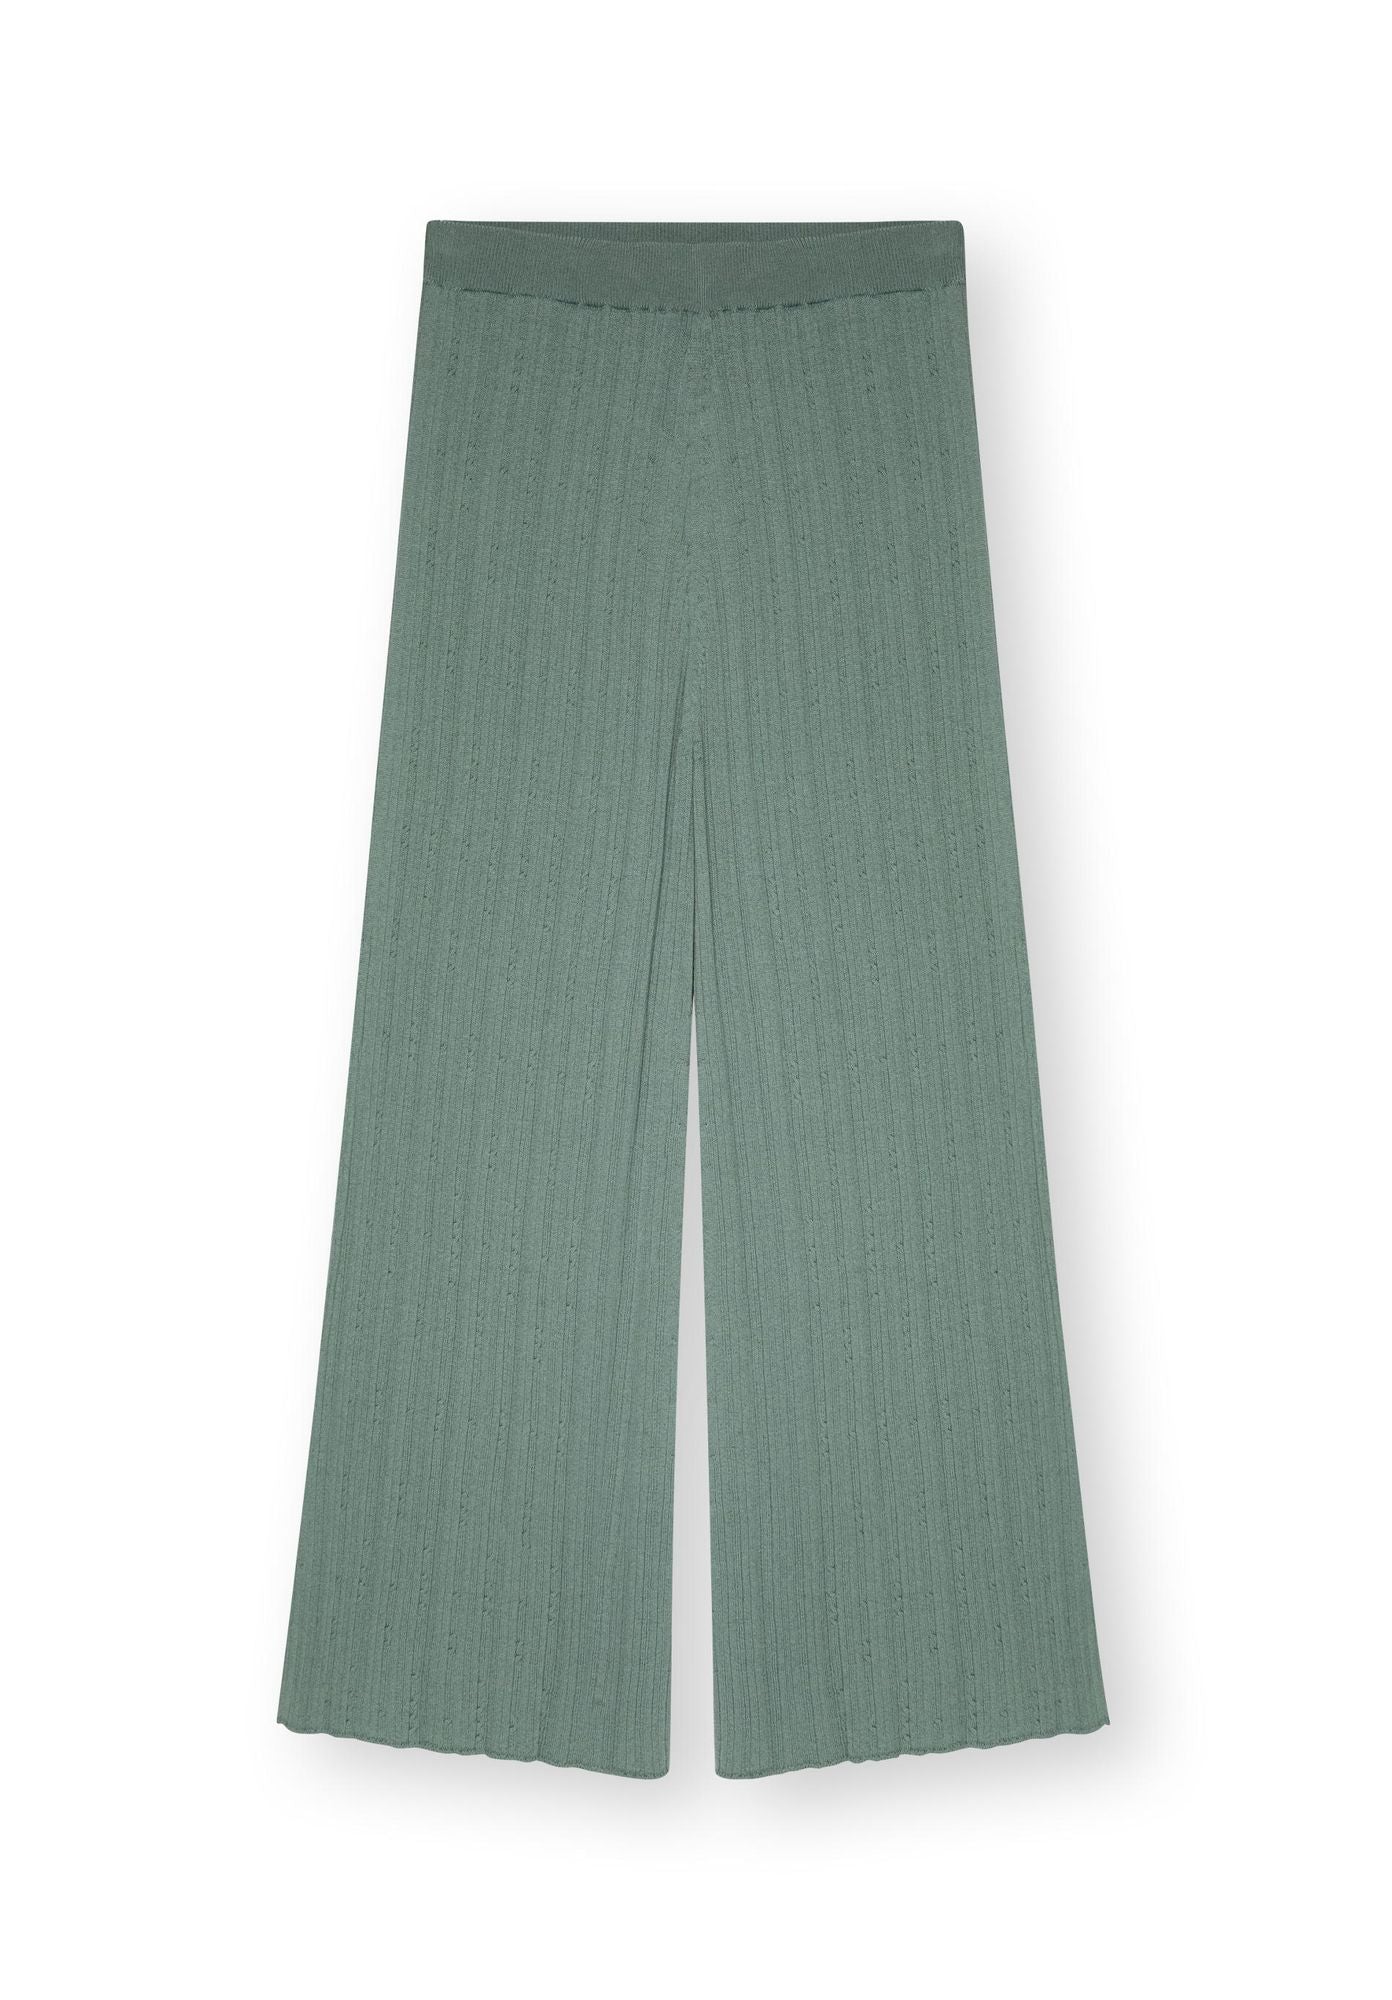 Pantalon LATHI forme culotte vert antique de LOVJOI en coton biologique